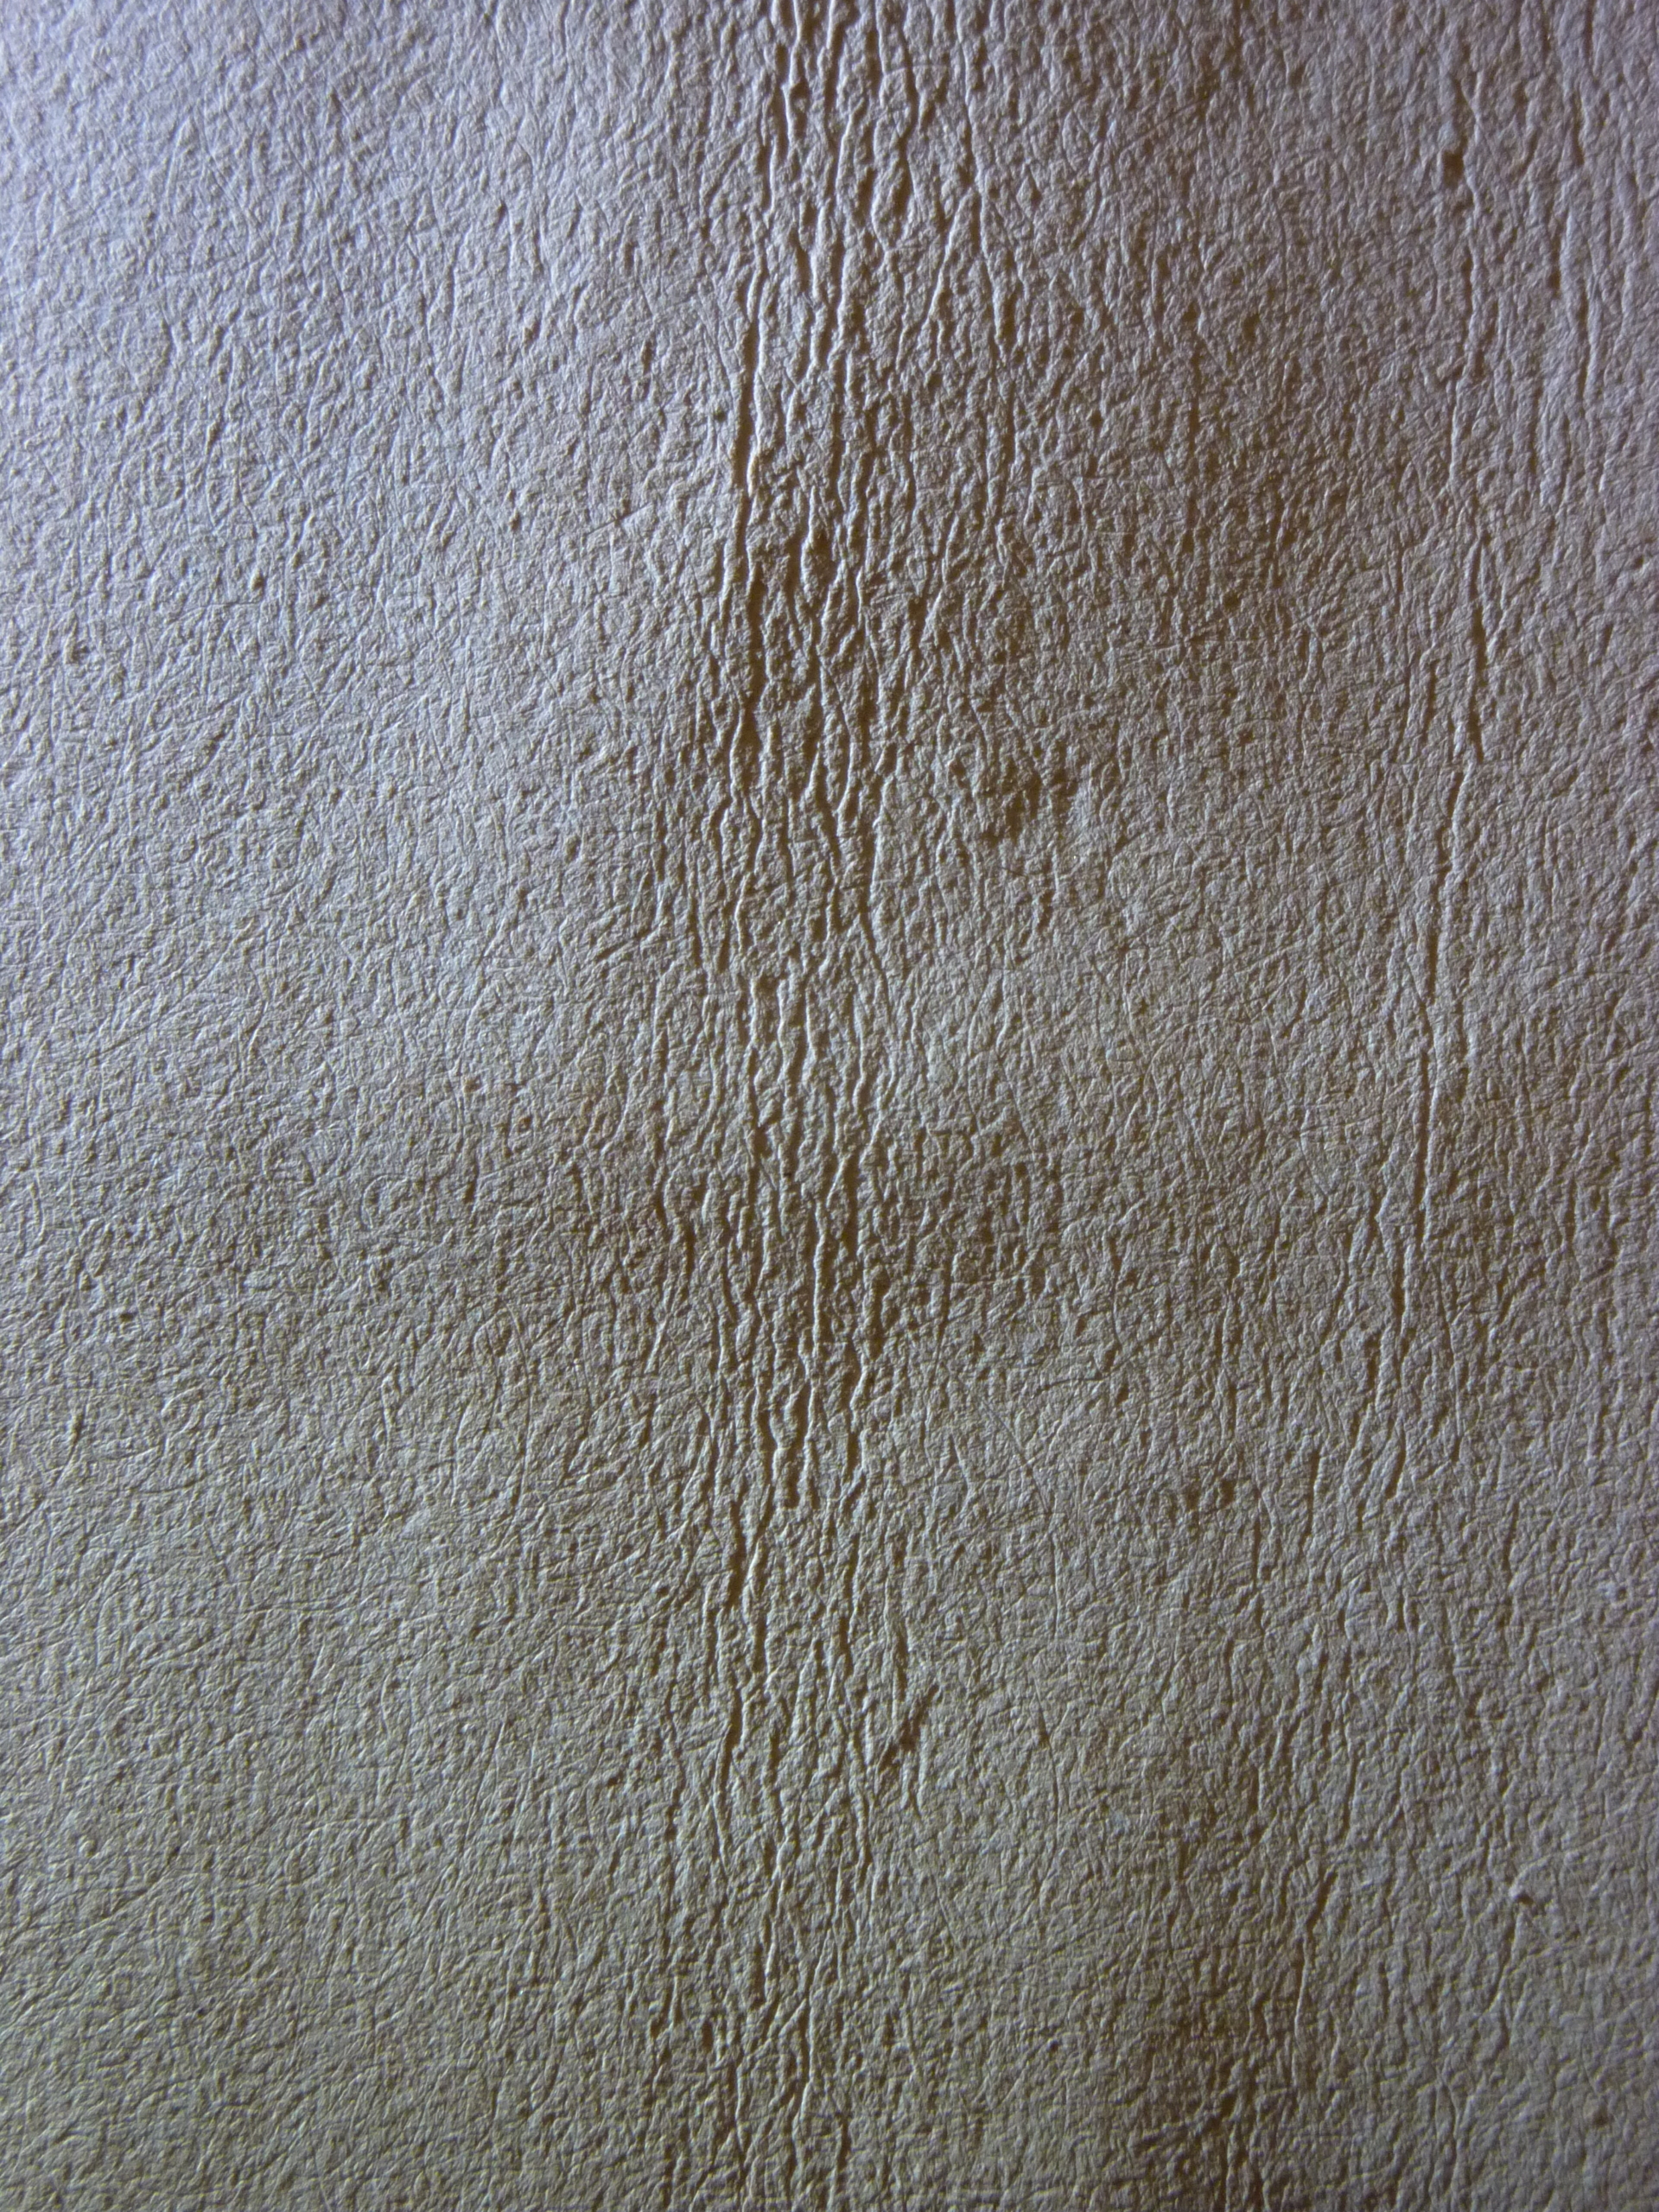 Das Bild zeigt Trocknungsfalten auf einem Blatt Papier